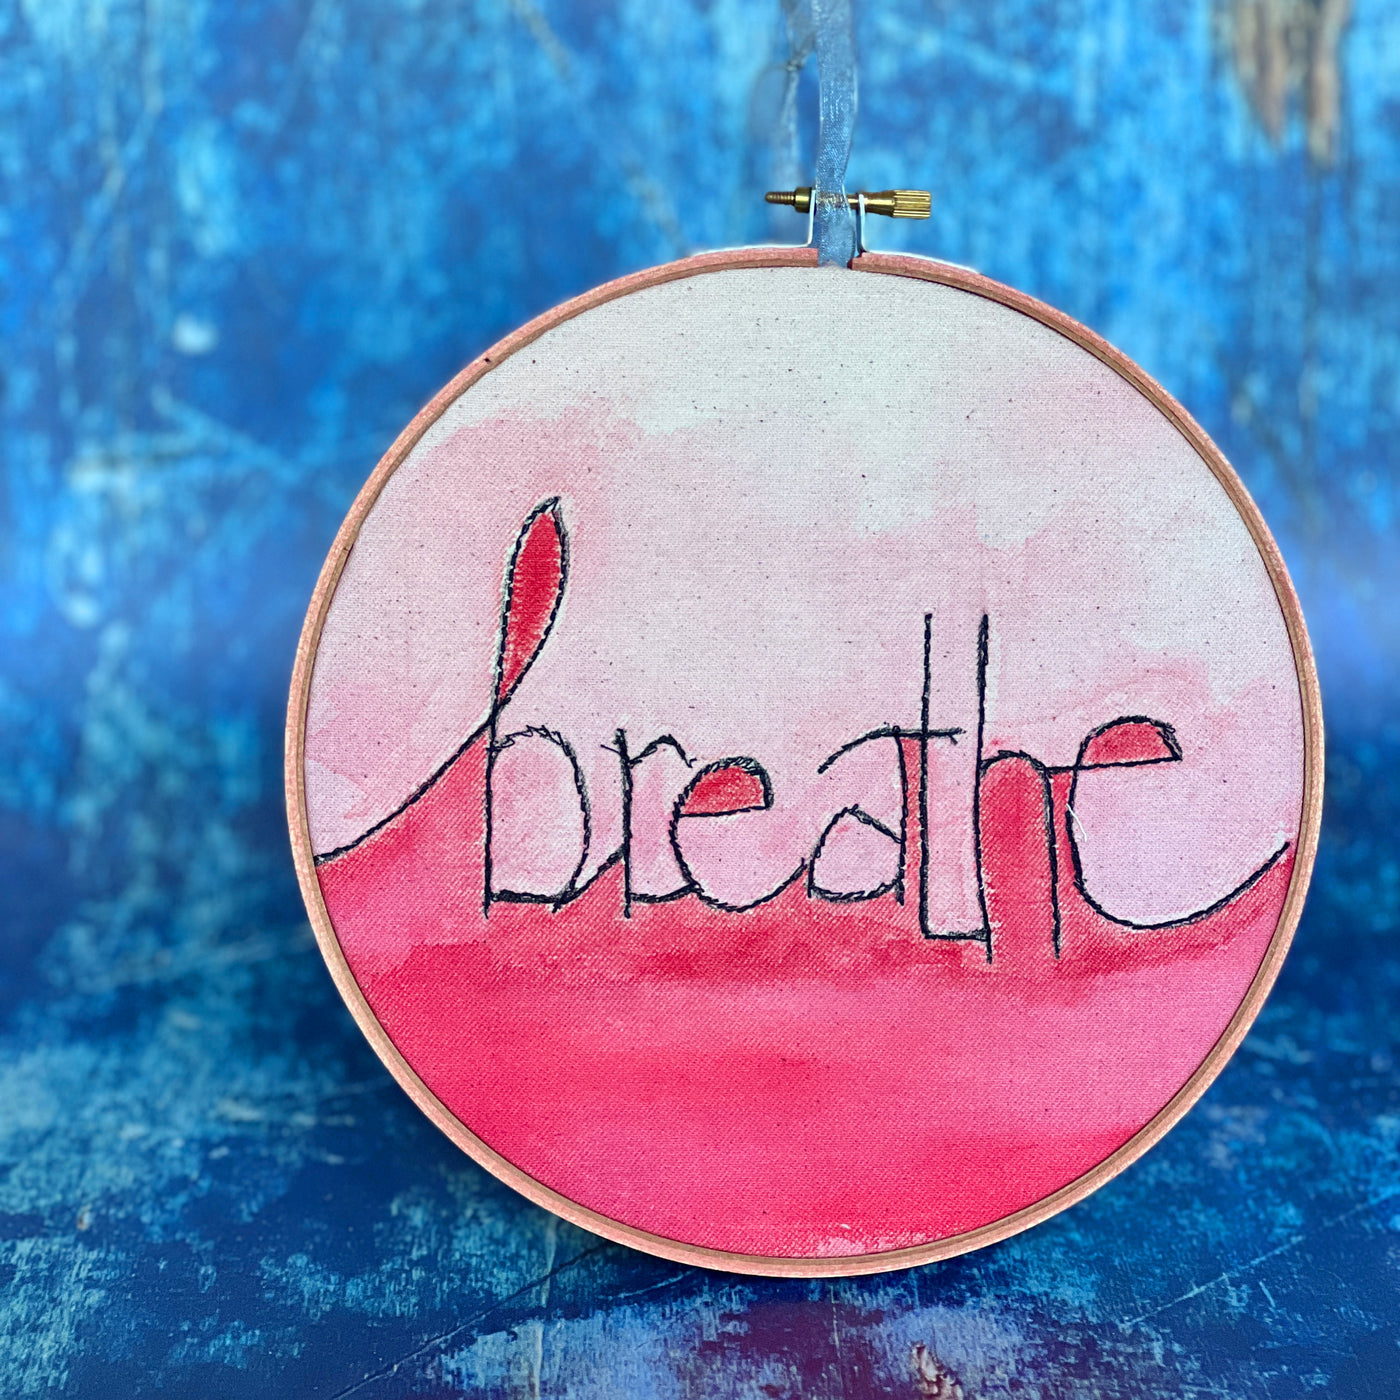 breathe more - single word hoop art